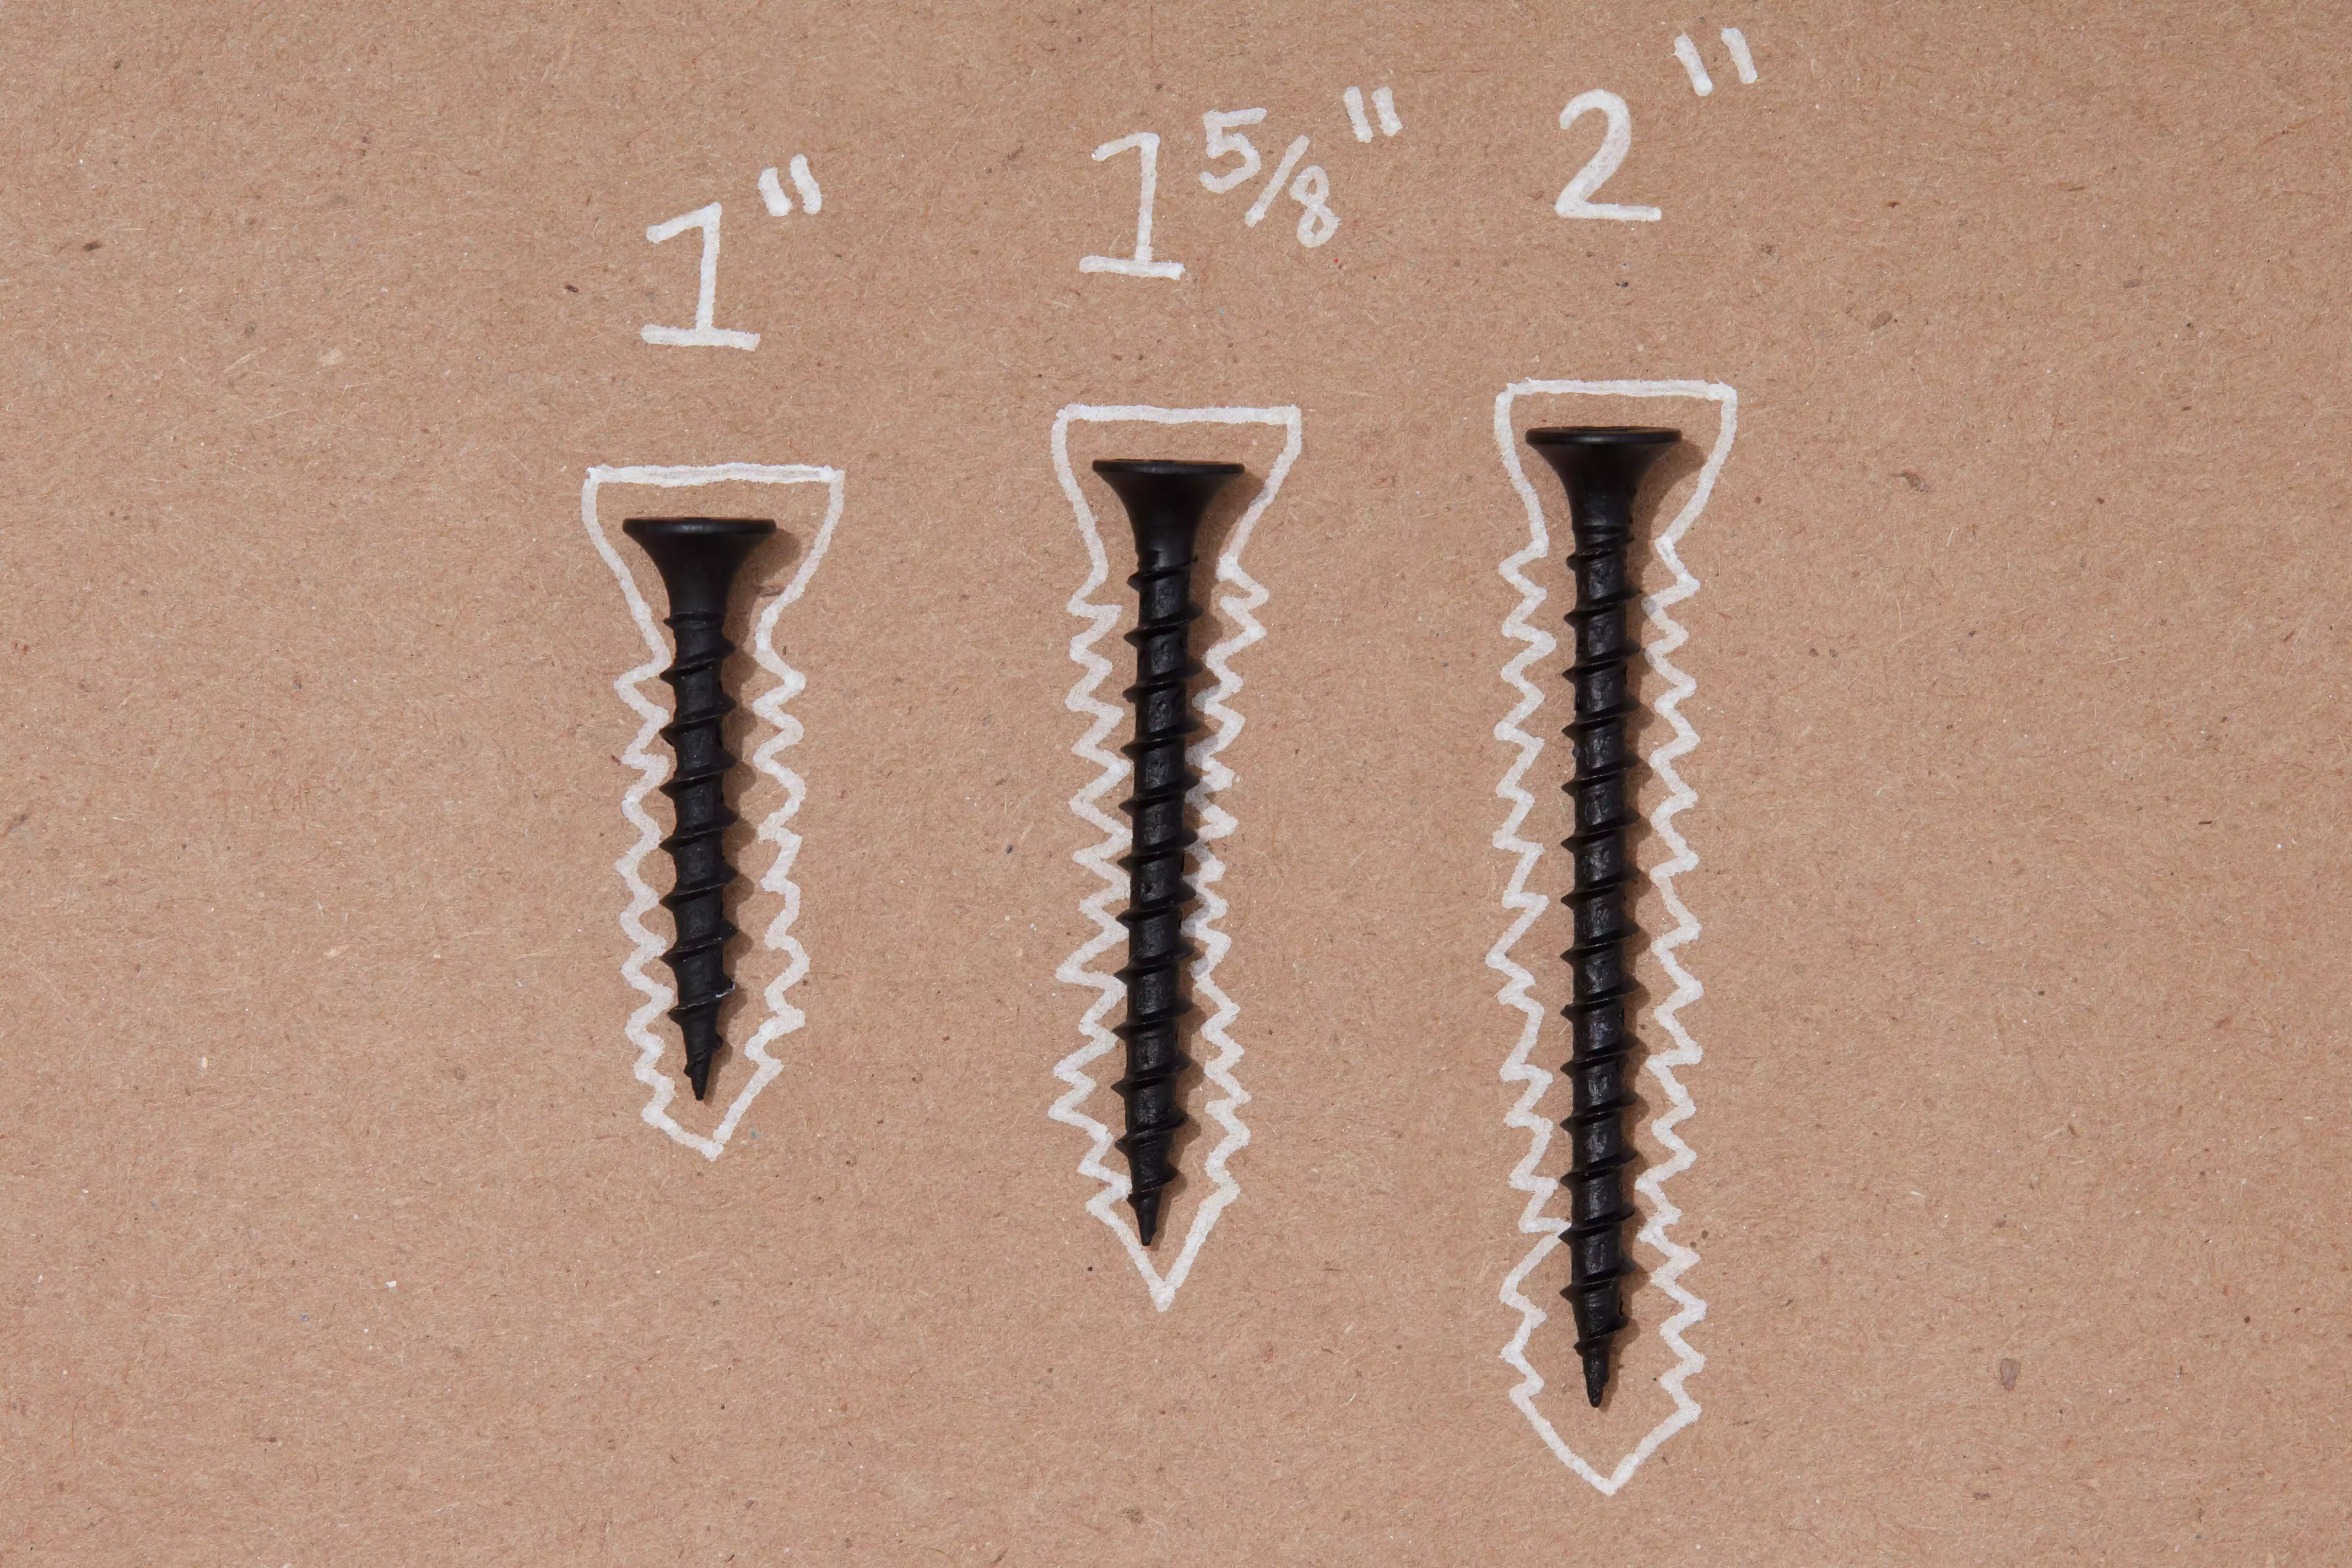 Drywall screw lengths